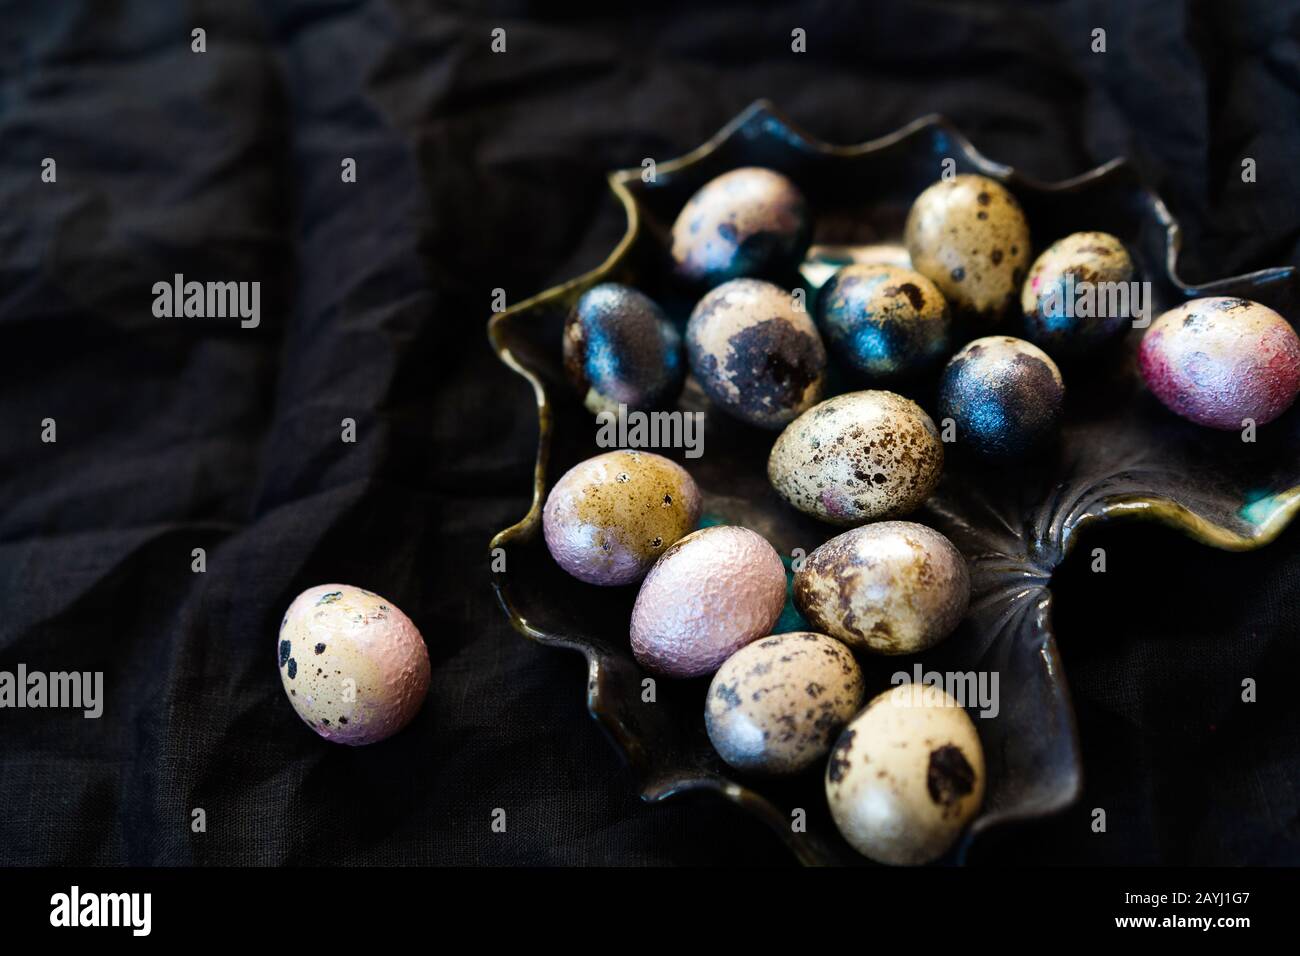 Huevos de pollo y codorniz de color rosa, plateado, dorado y azul sobre negro Foto de stock